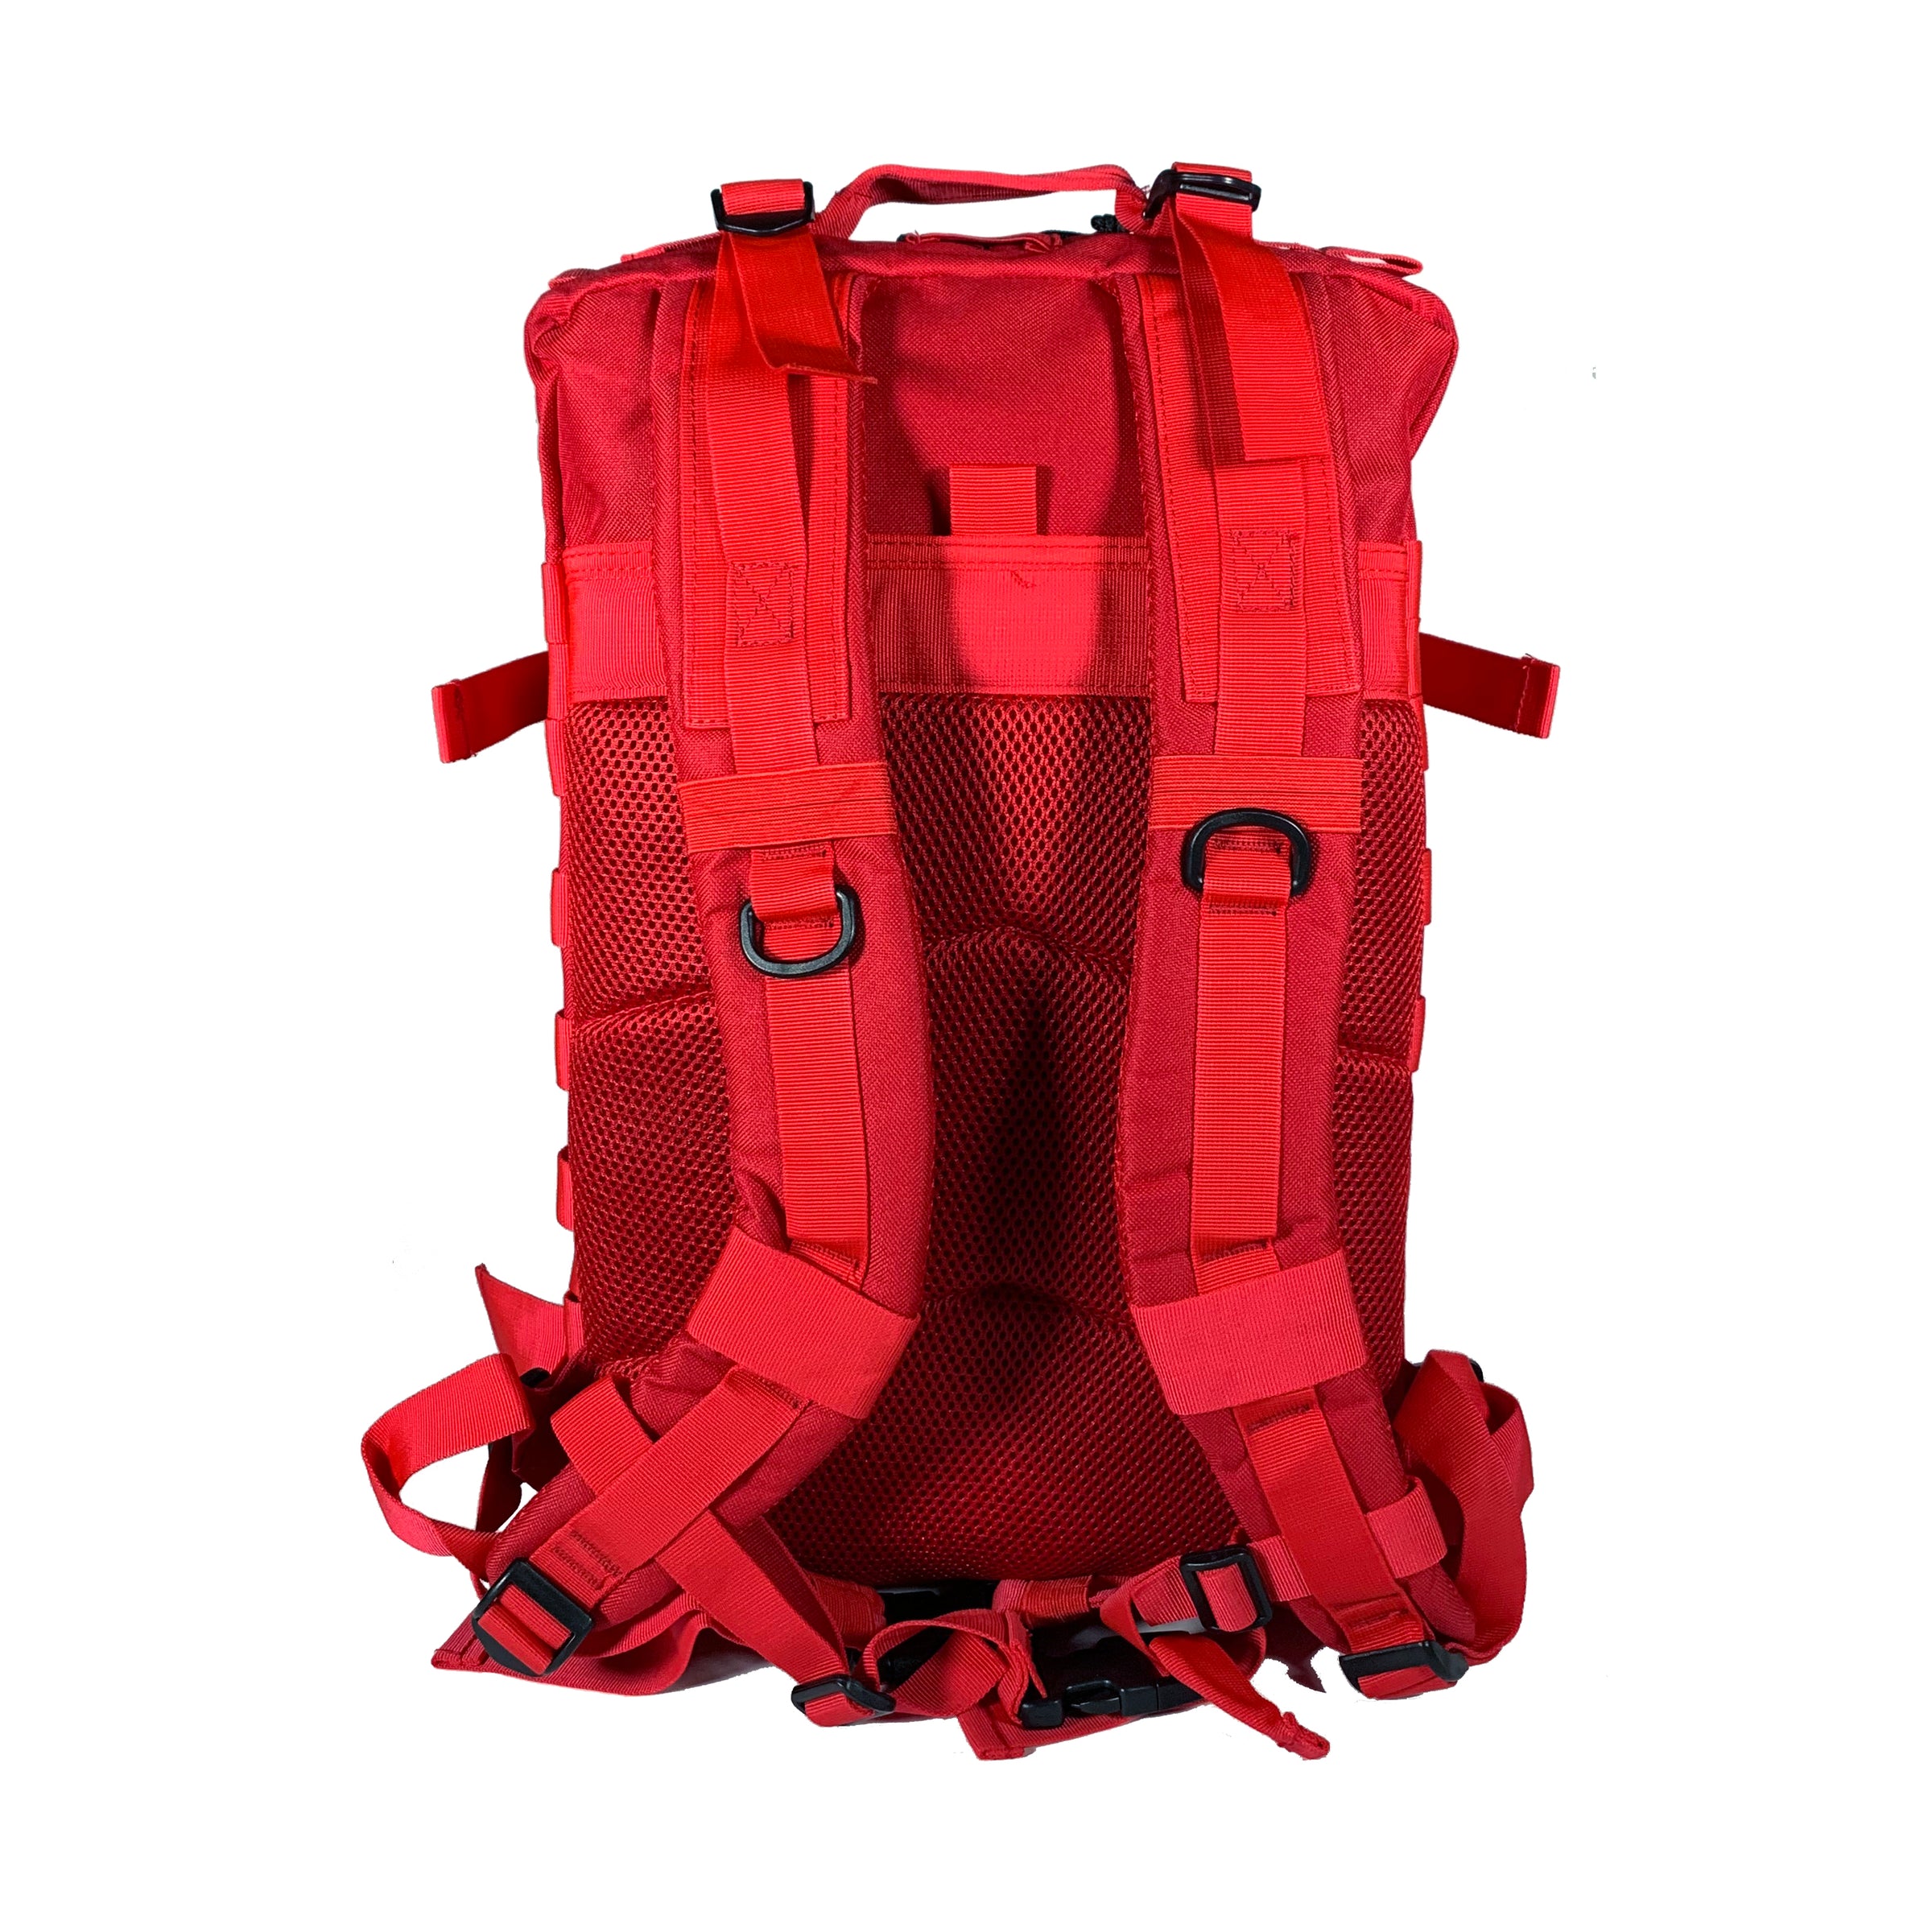 Basketball Backpack - Saber Alpha Ultra Tough Adrenaline XL Backpack